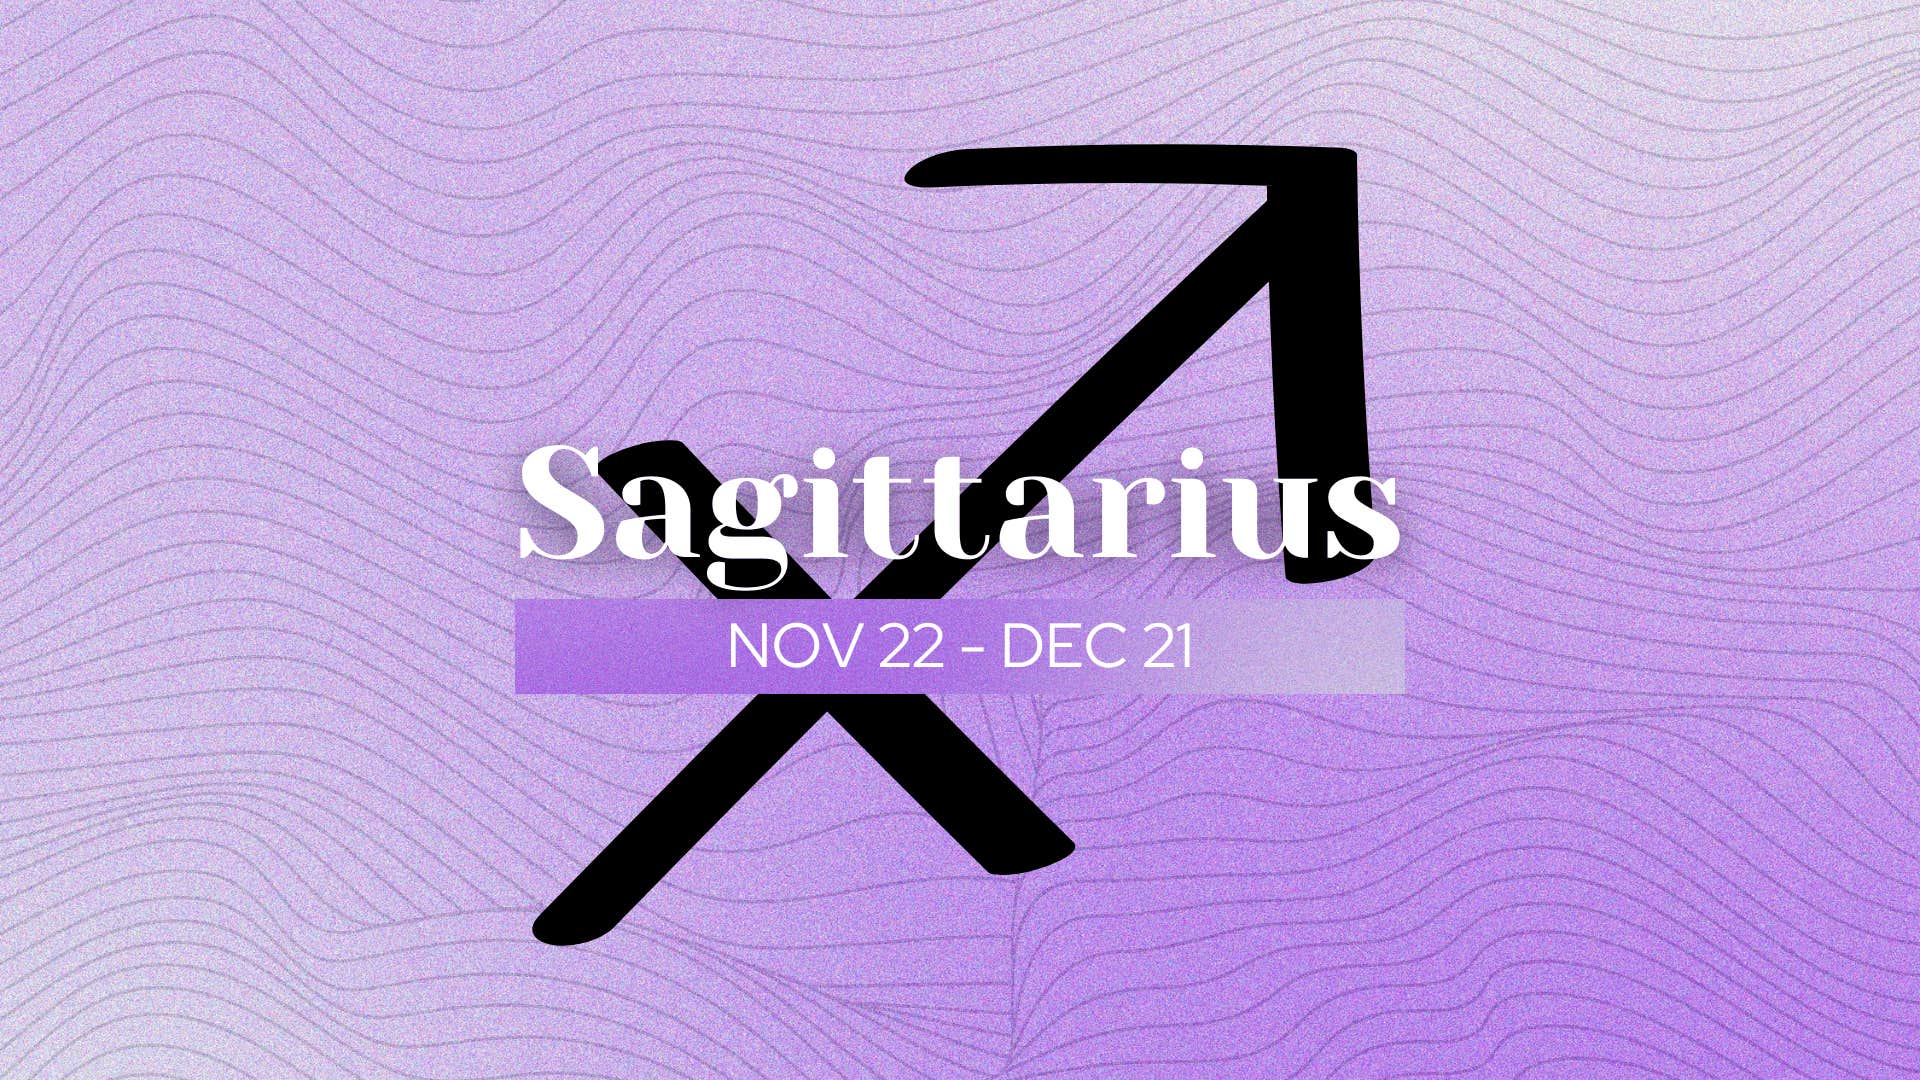 what makes sagittarius uniquely special